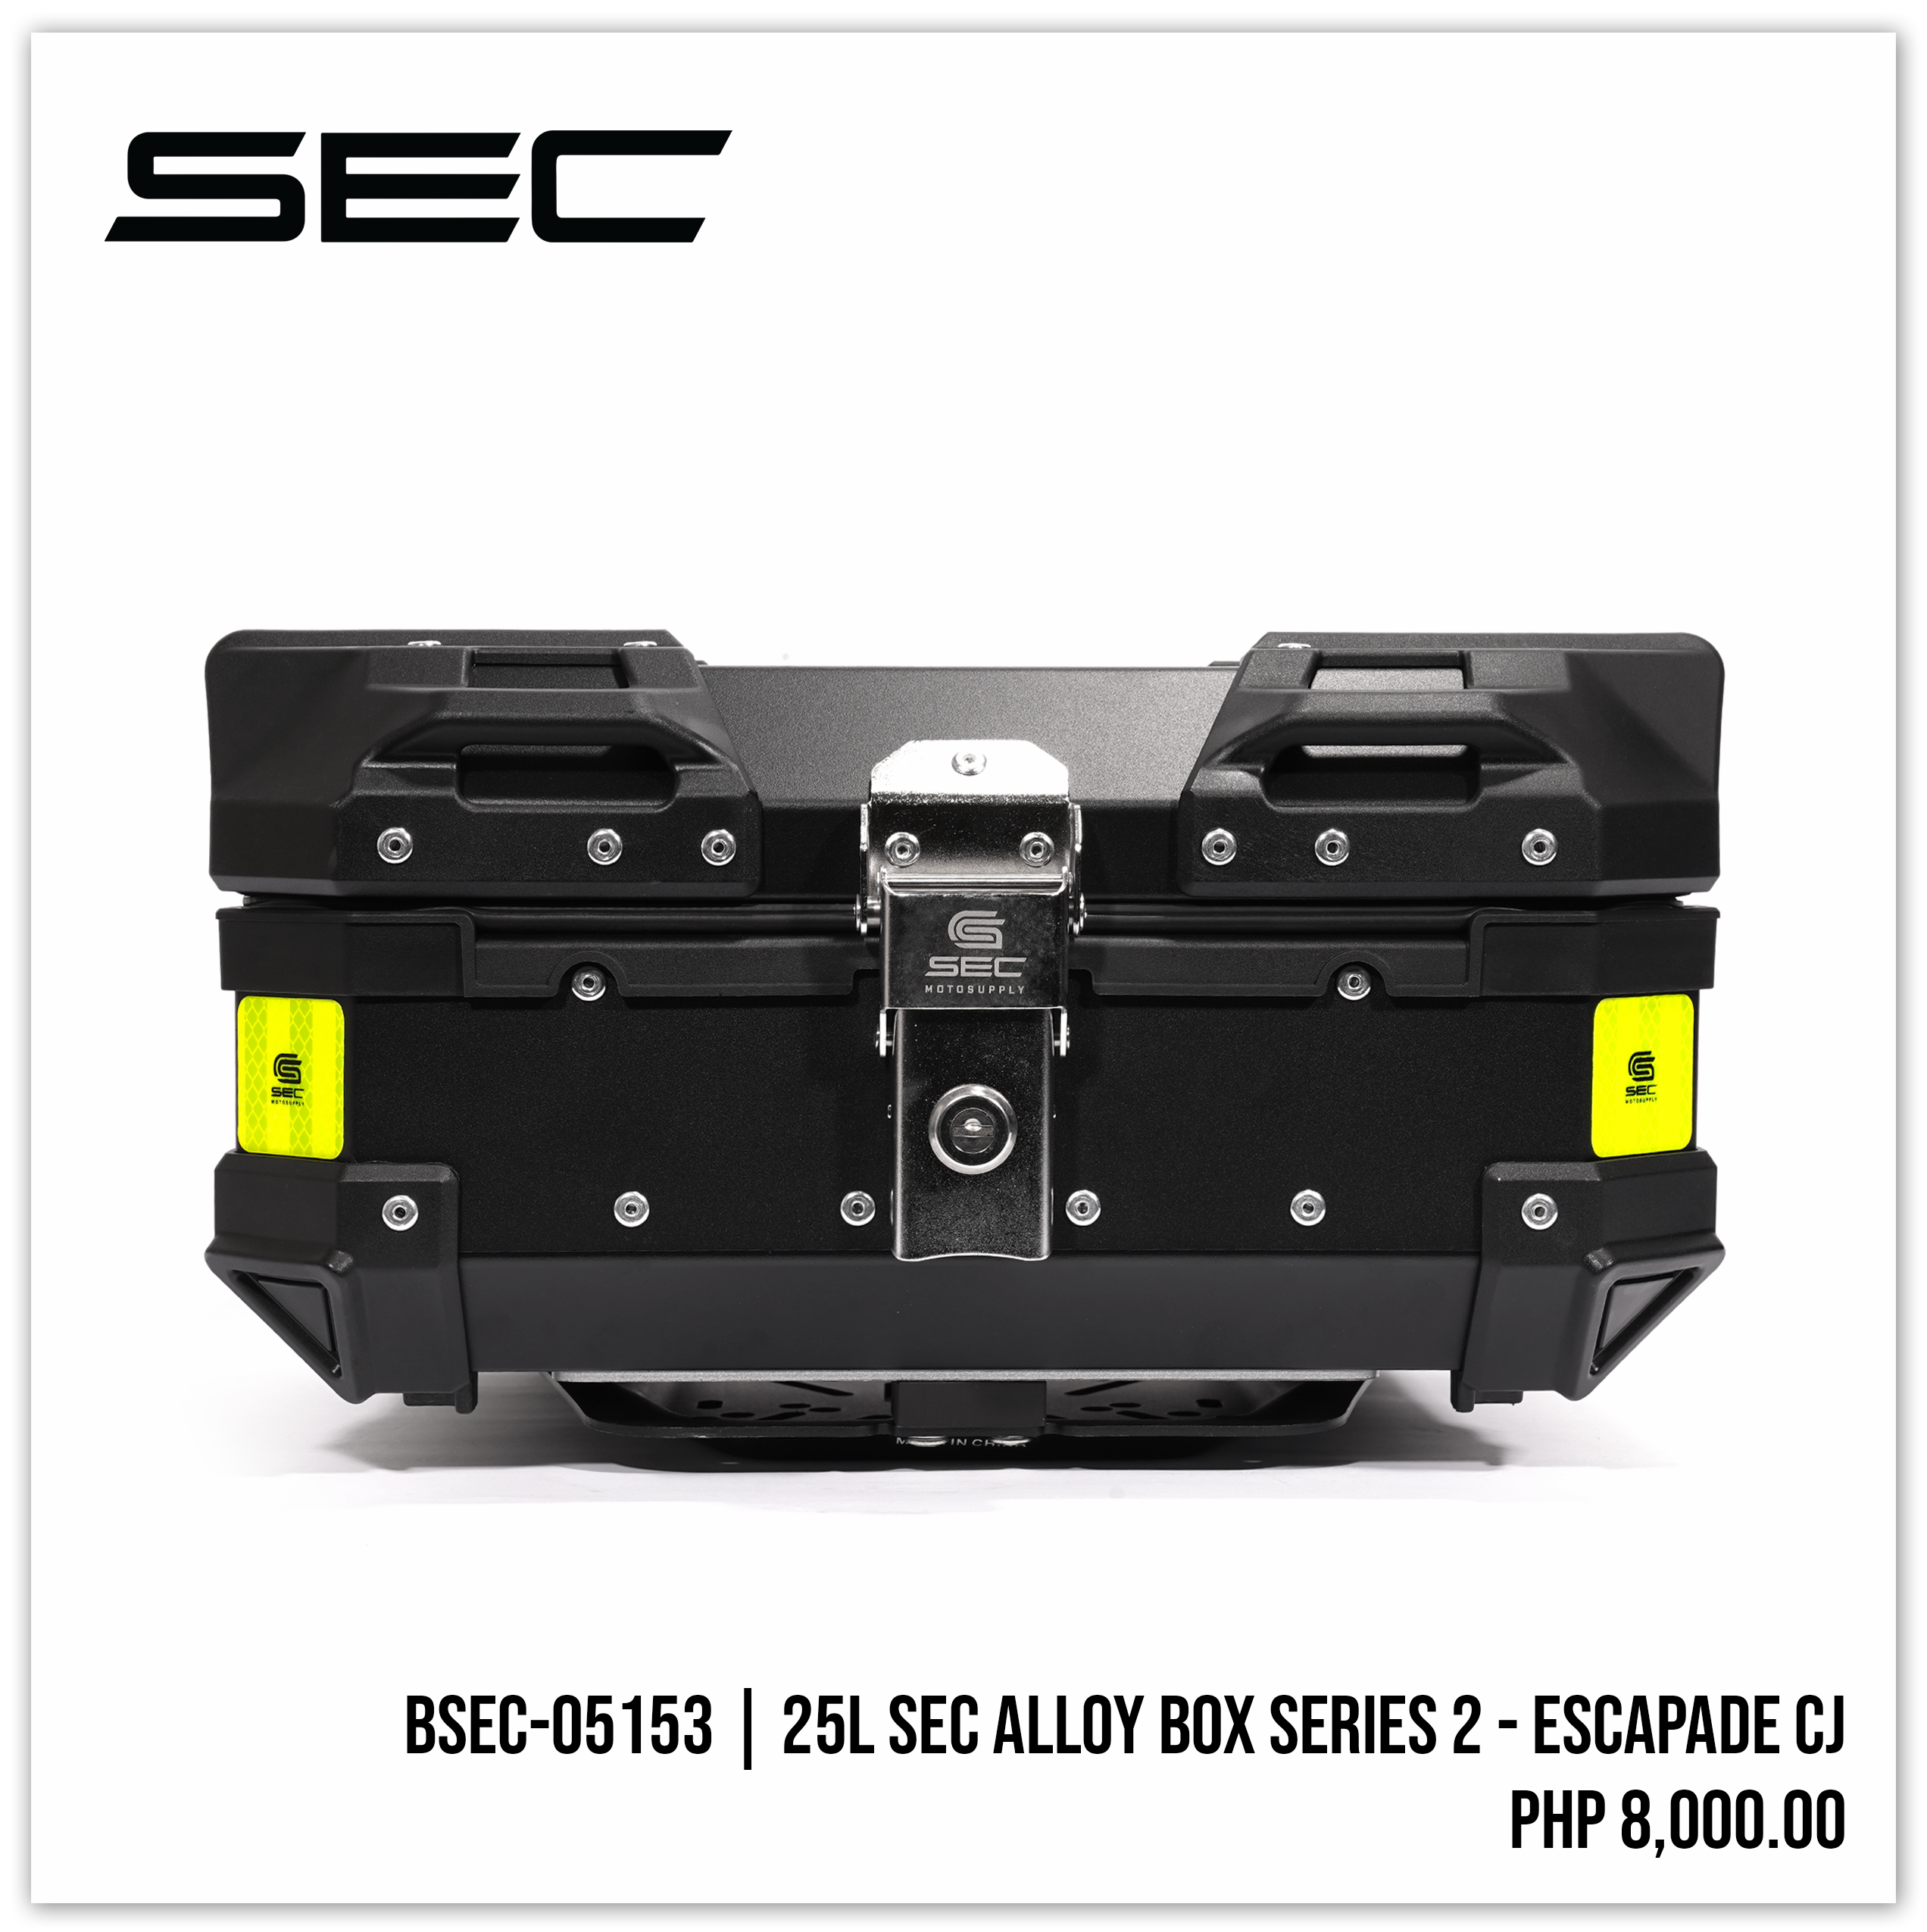 25L SEC Alloy Box Series 2 - ESCAPADE CJ